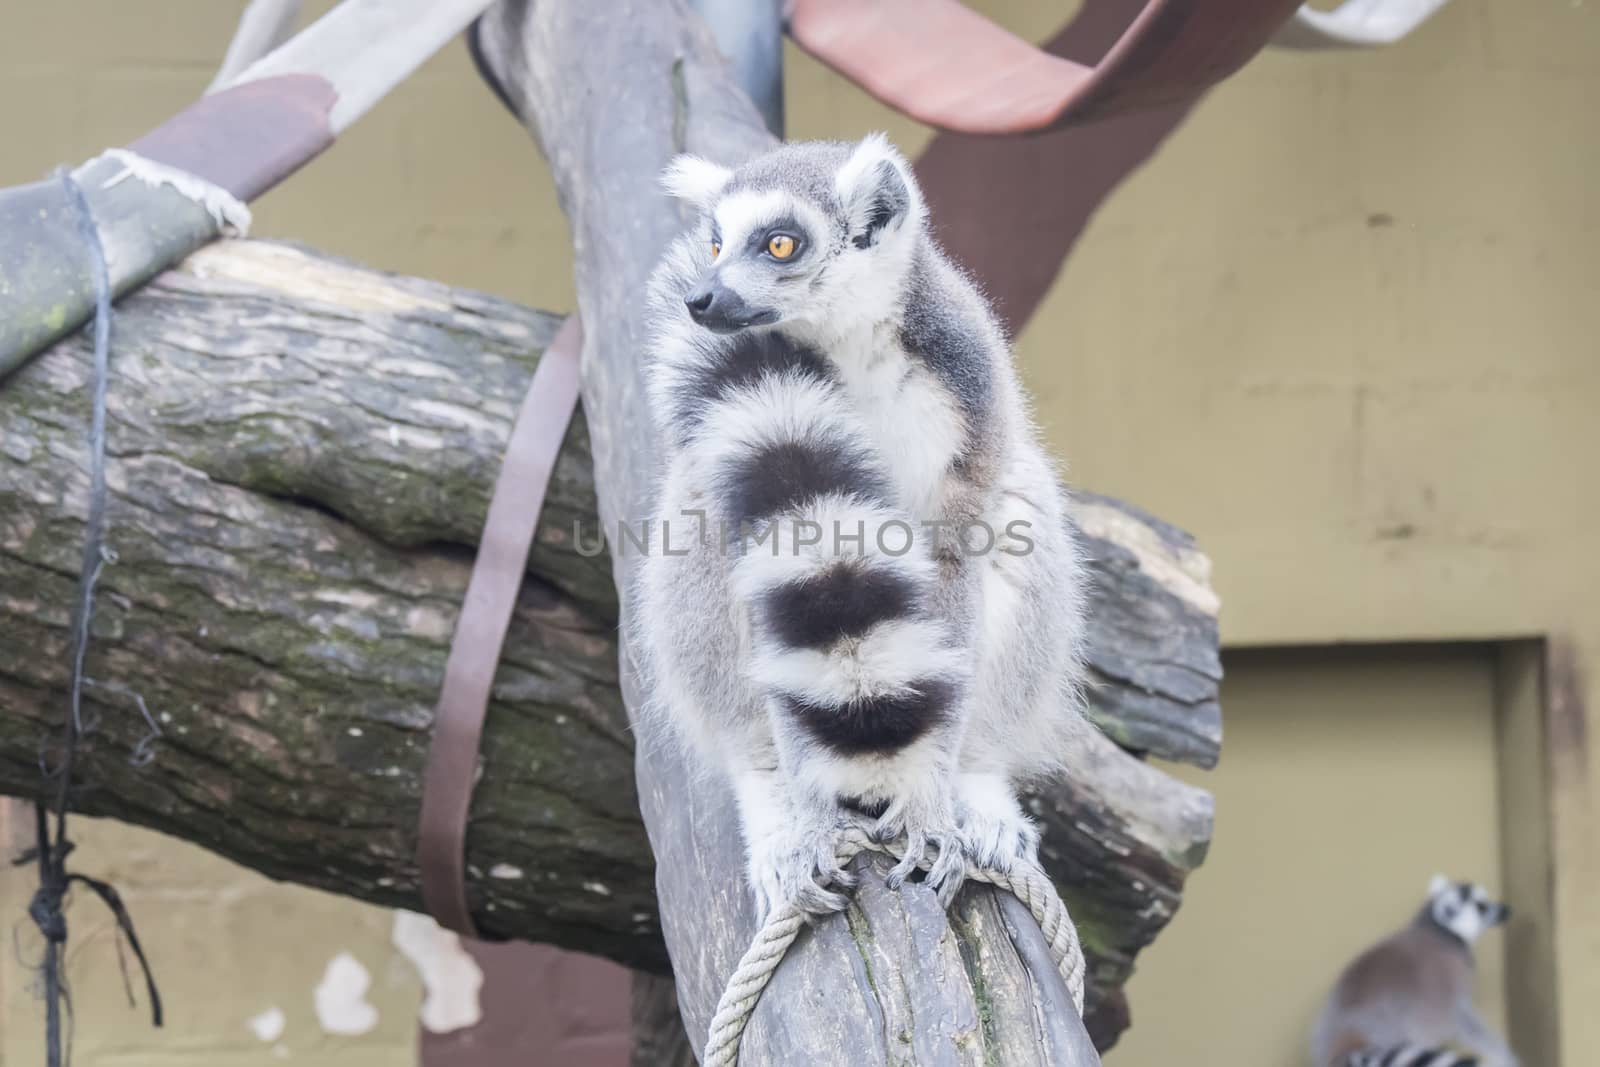 Lemur catta, Ring-tailed lemur